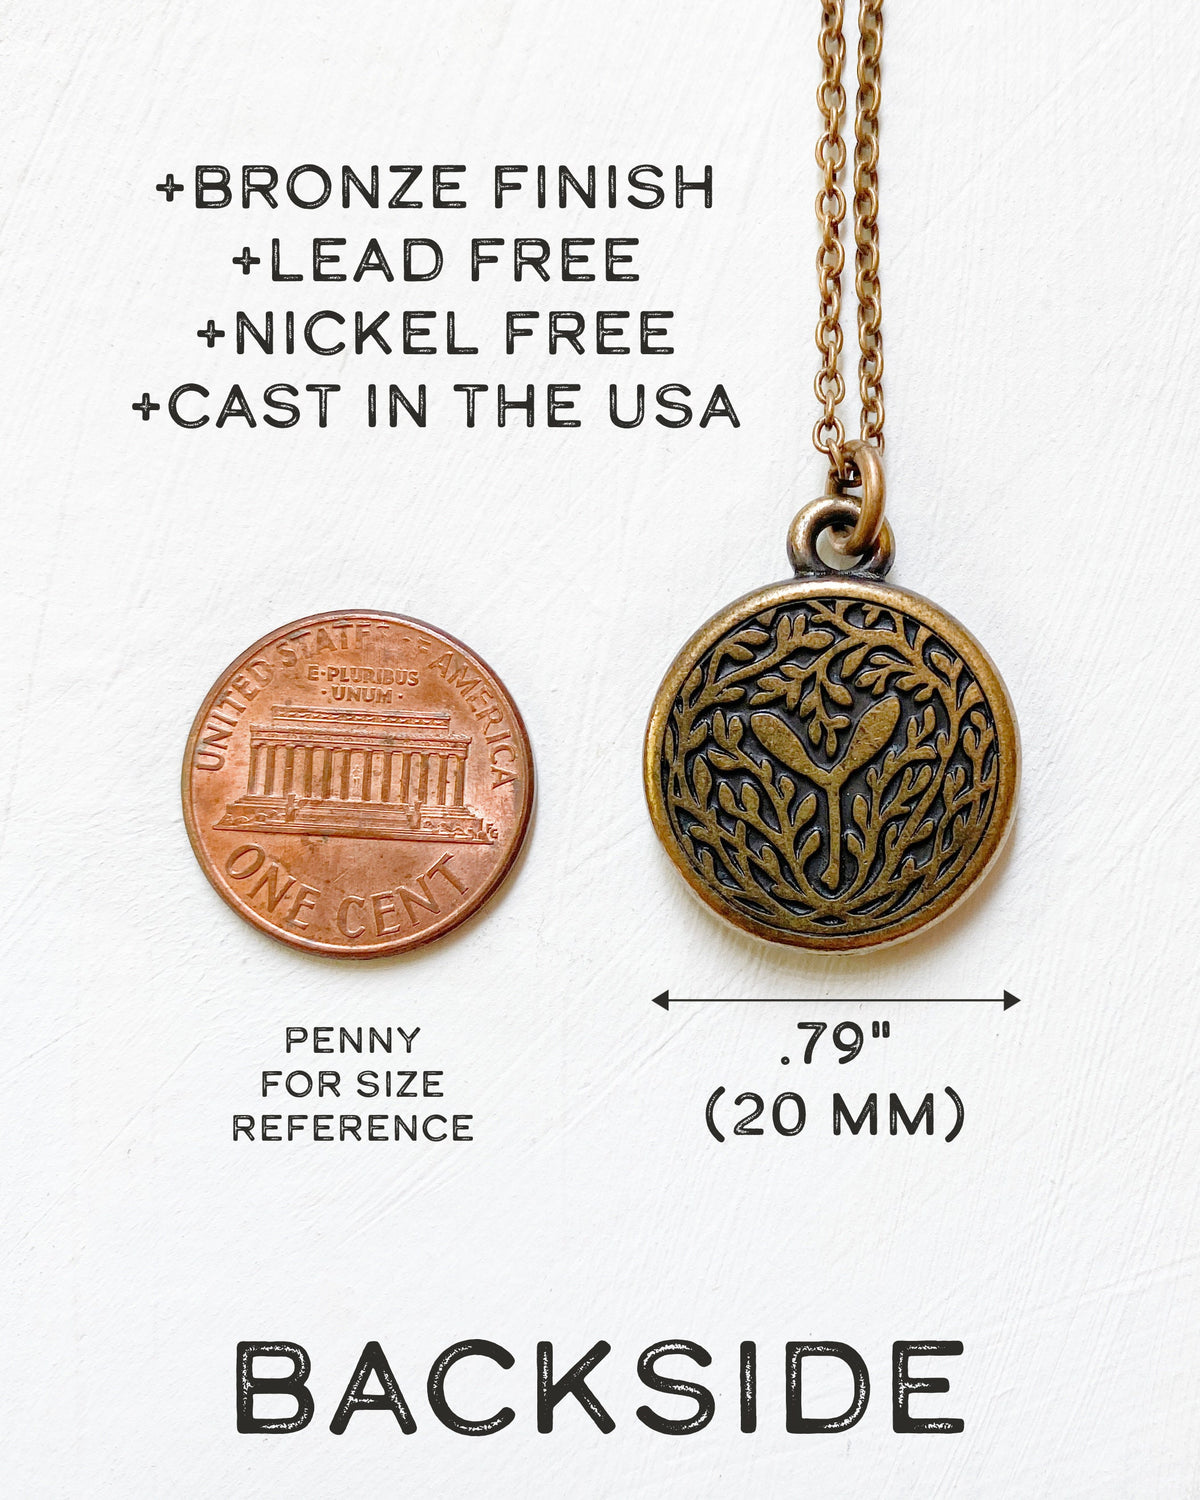 Cardinal Bronze Necklace